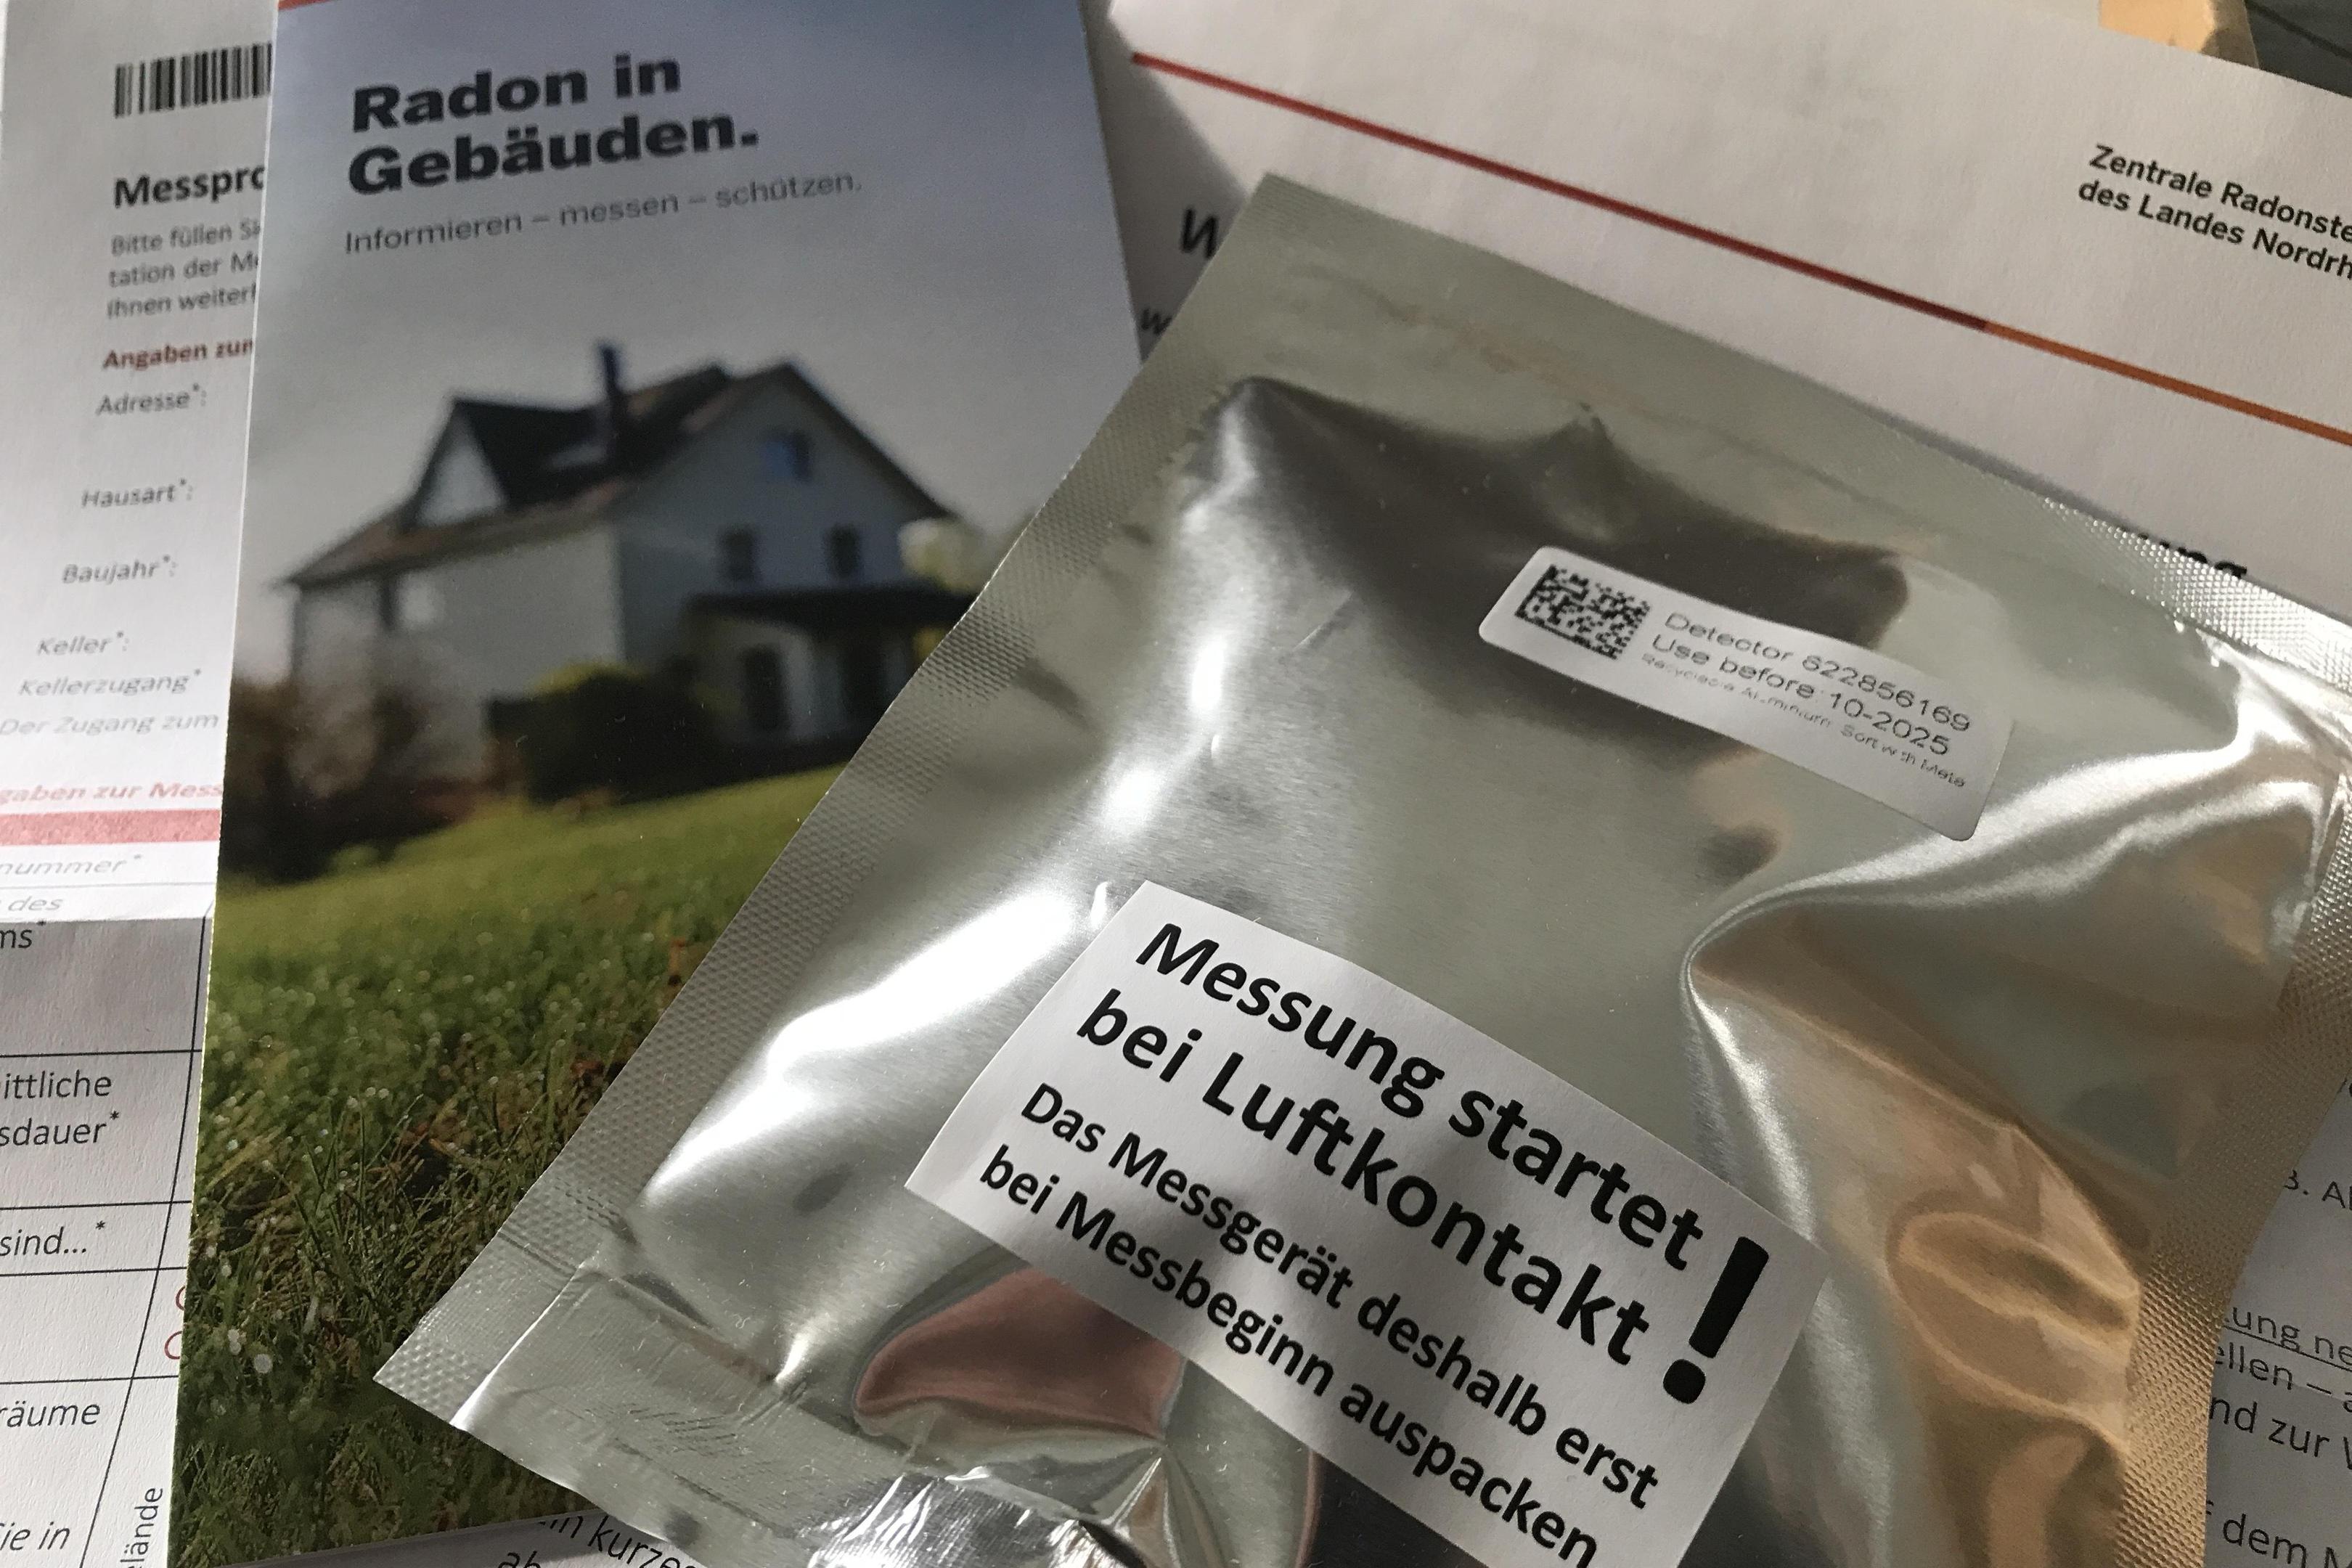 Die Messgeräte zur Überprüfung von Radon-Werten im eigenen Haus werden dicht verpackt geliefert.